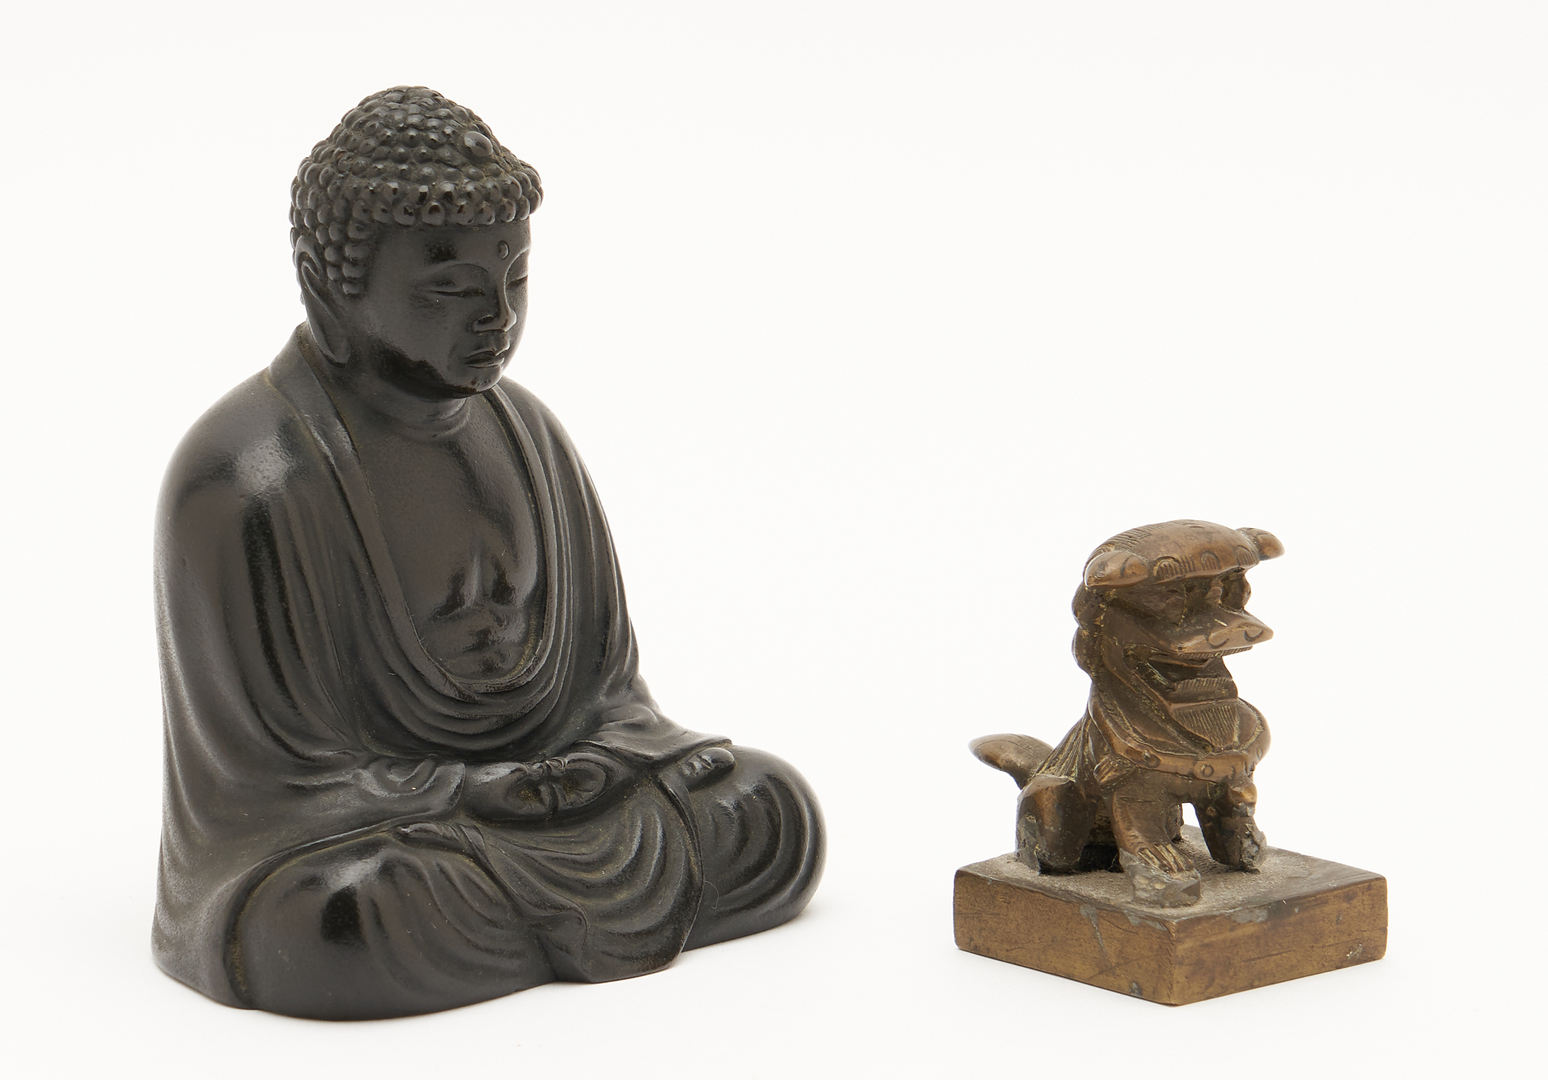 Lot 414: 3 Chinese Decorative Items, Bronze Buddha, Fu Dog Seal, & Enameled Box